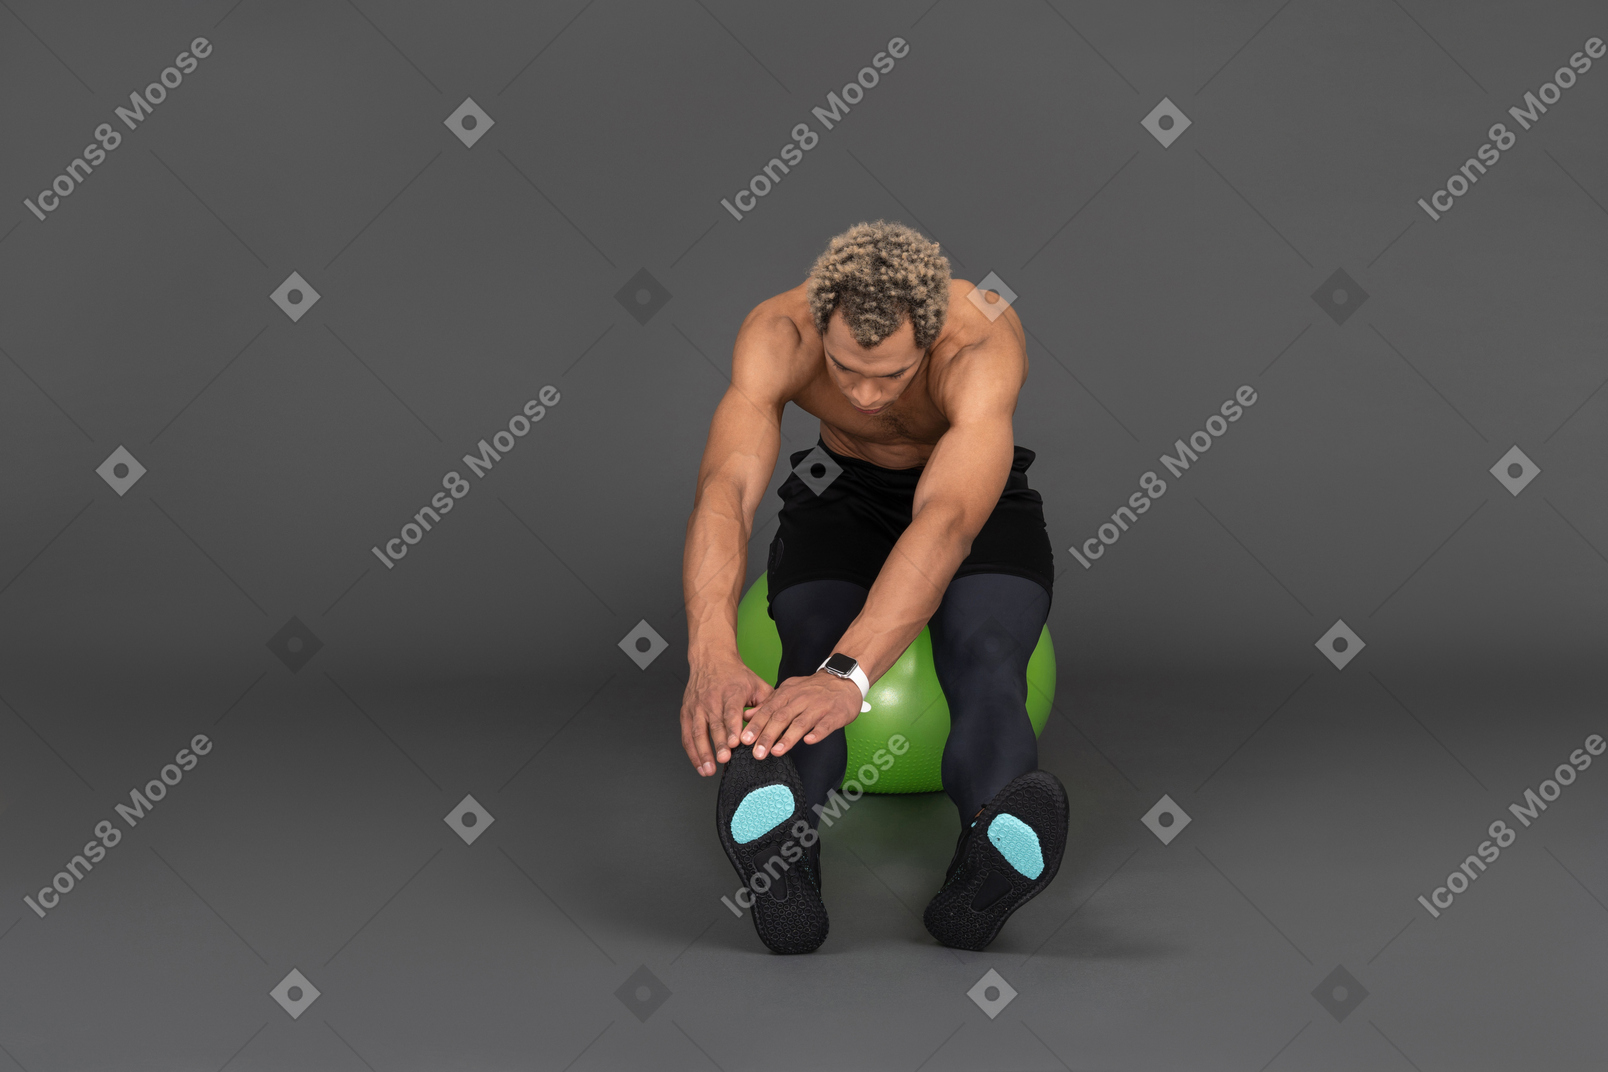 Vista frontal de um homem afro sem camisa se alongando sentado em uma bola de ginástica verde